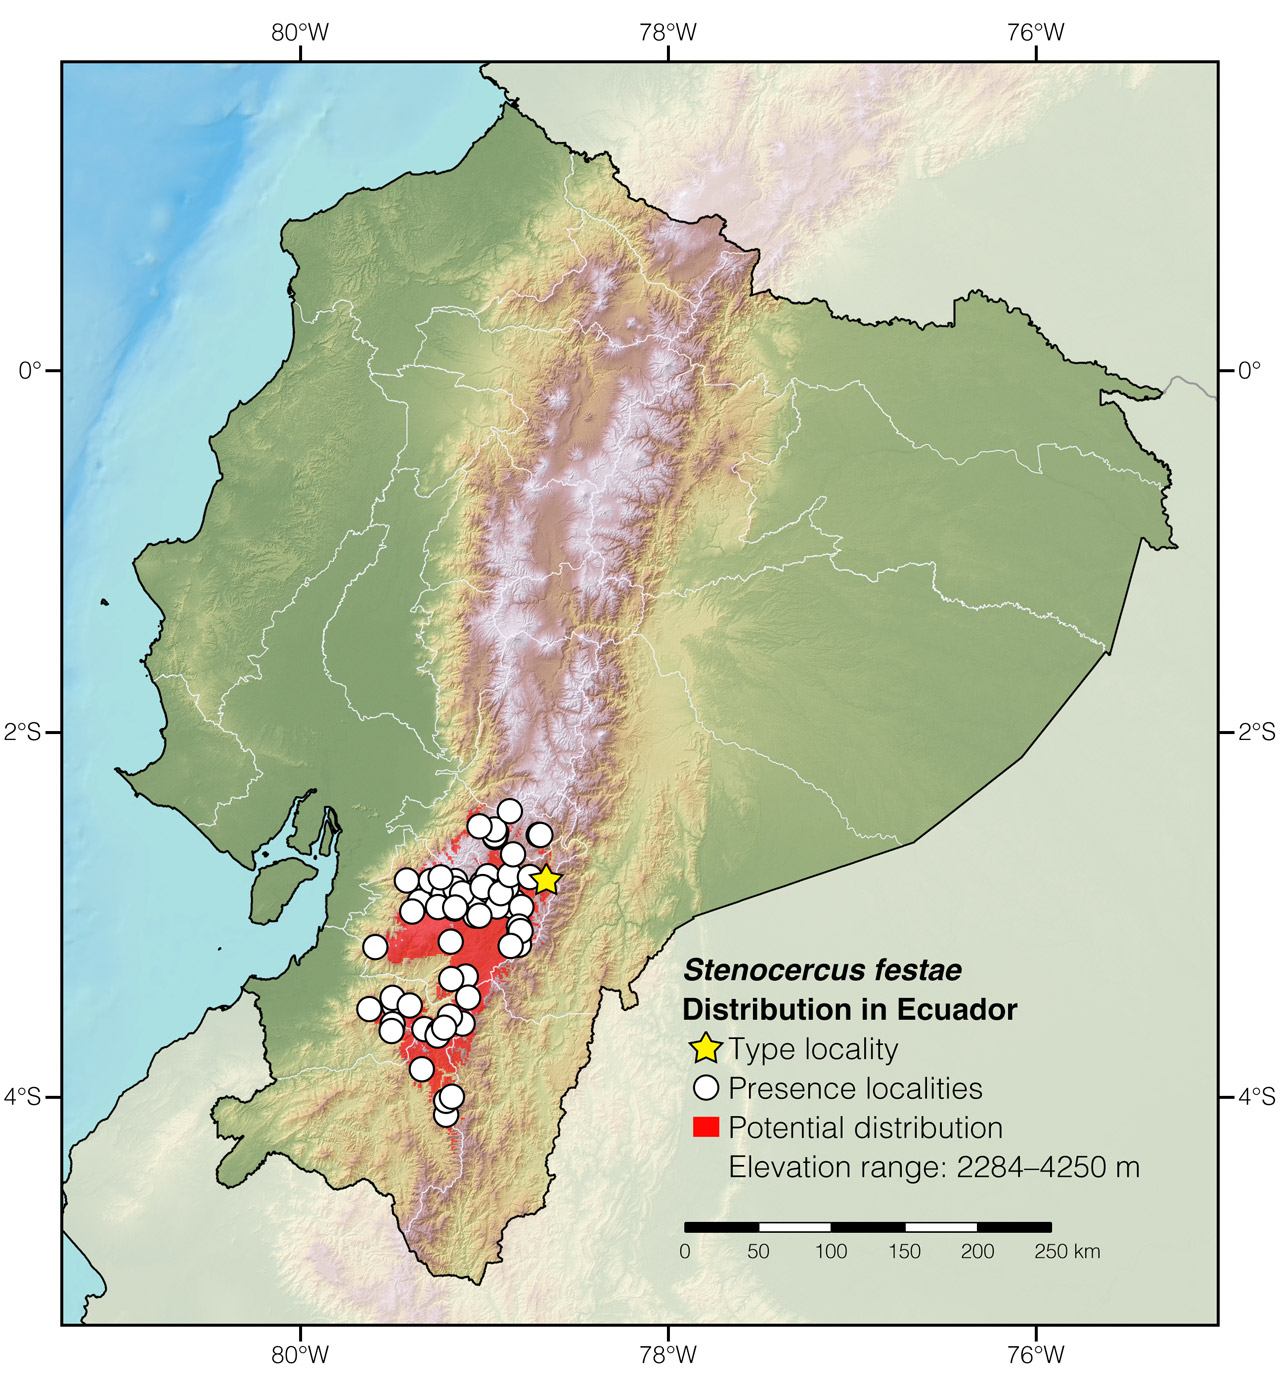 Distribution of Stenocercus festae in Ecuador